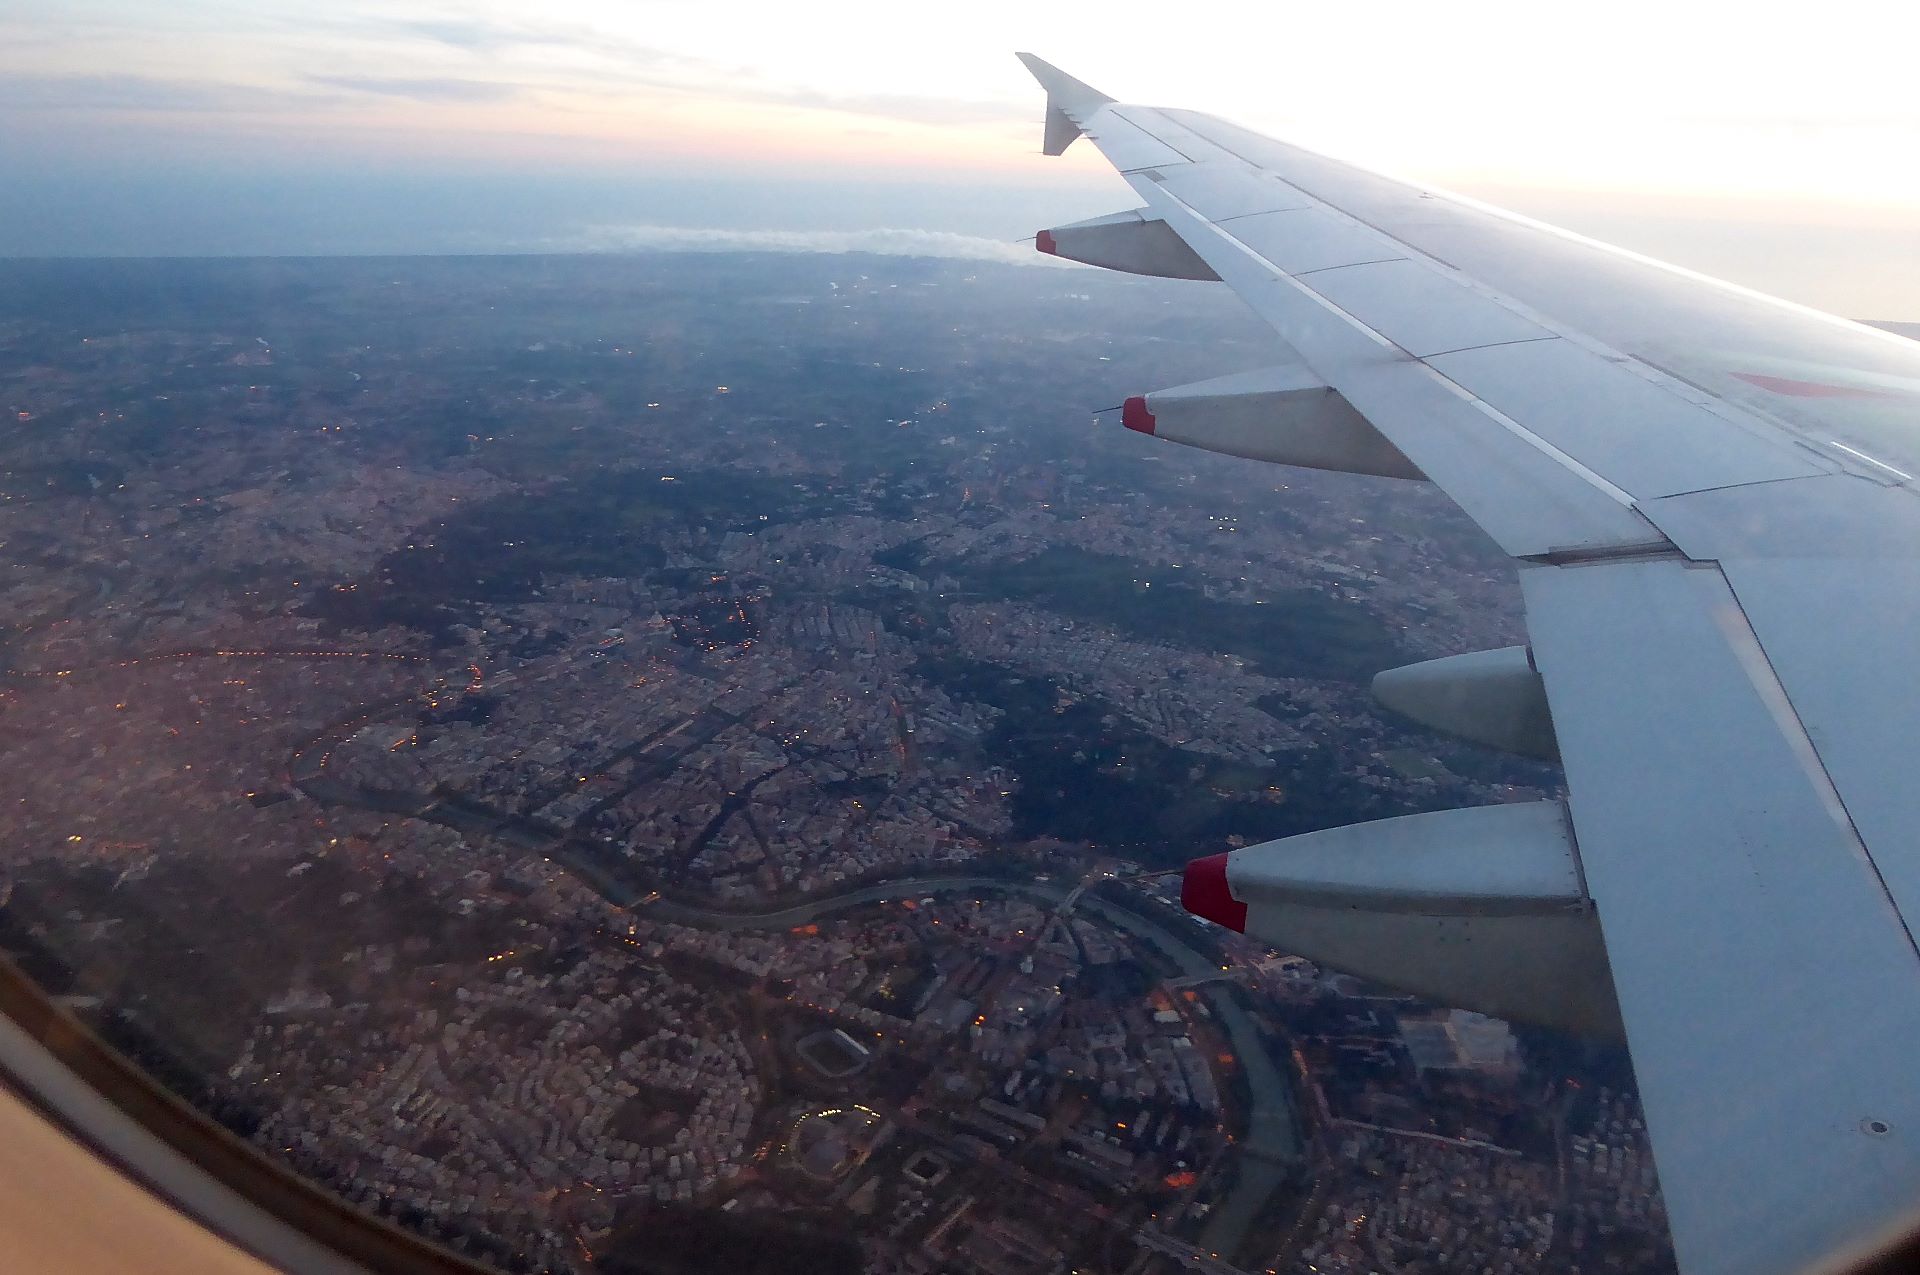 Nächtlich erleuchtetes Stadtzentrum von Rom kurz vor der Landung beim Transfer in Rom Fiumicino